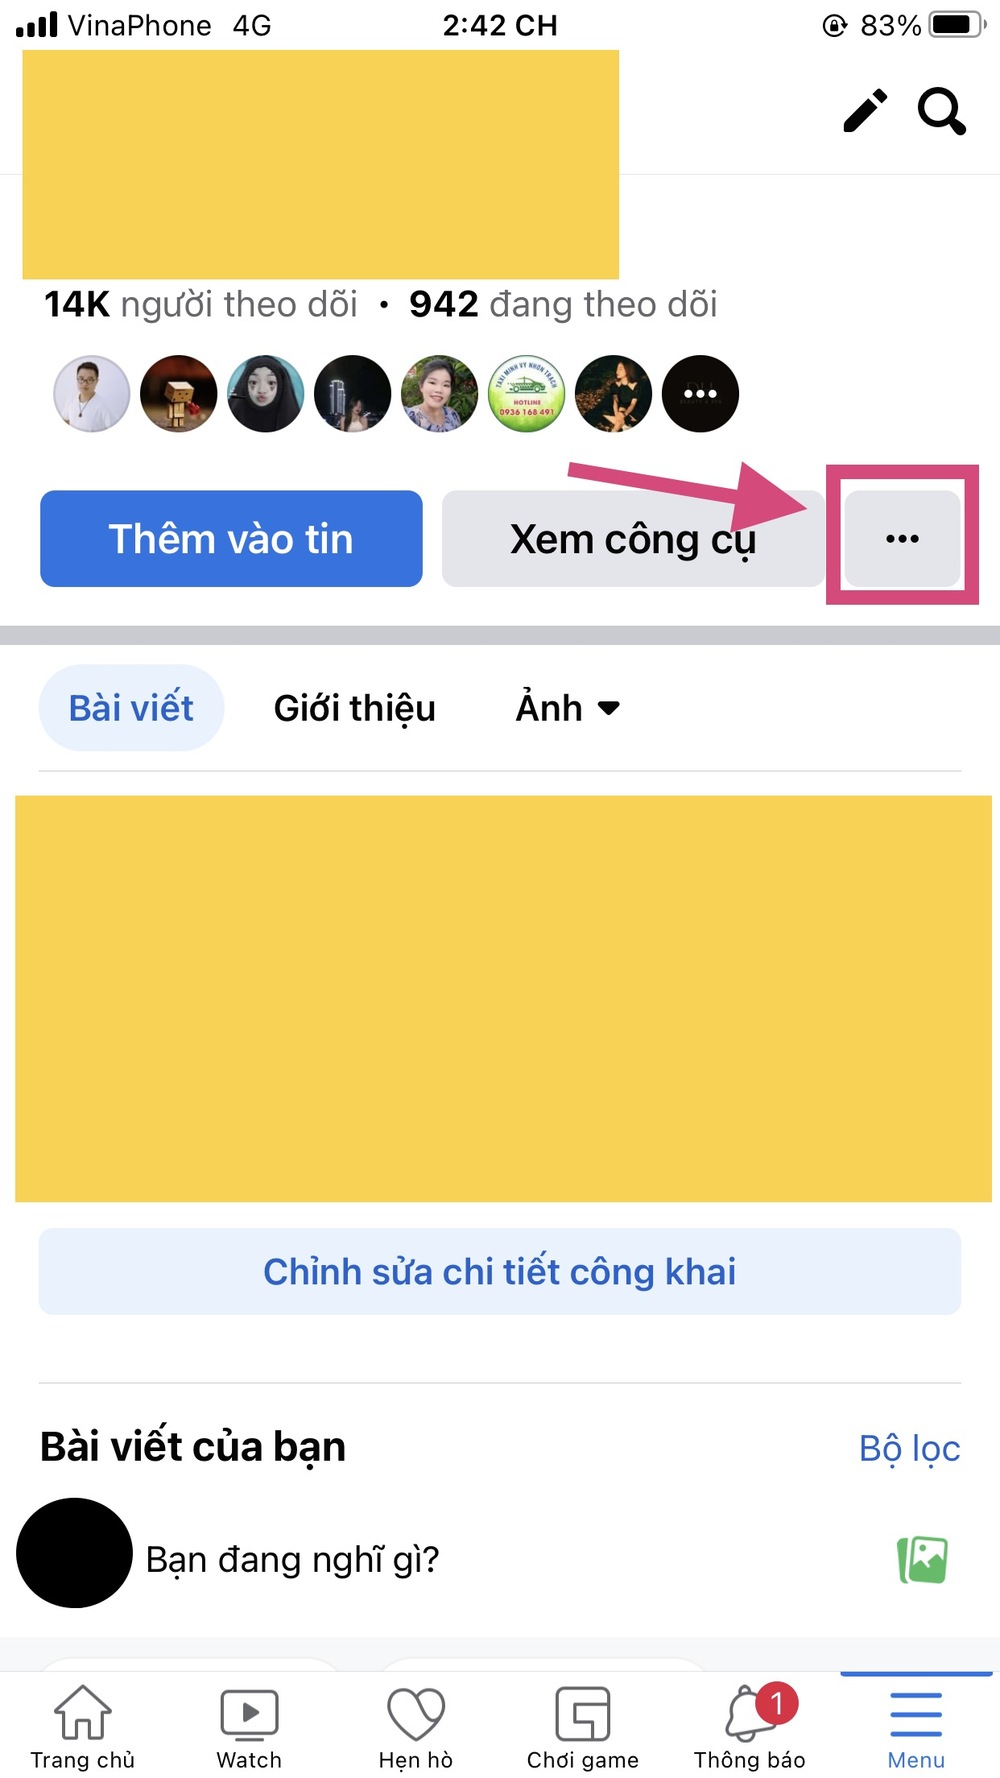 Đây là cách để người dùng Việt kích hoạt tính năng kiếm tiền cho tài khoản Facebook - Ảnh 2.